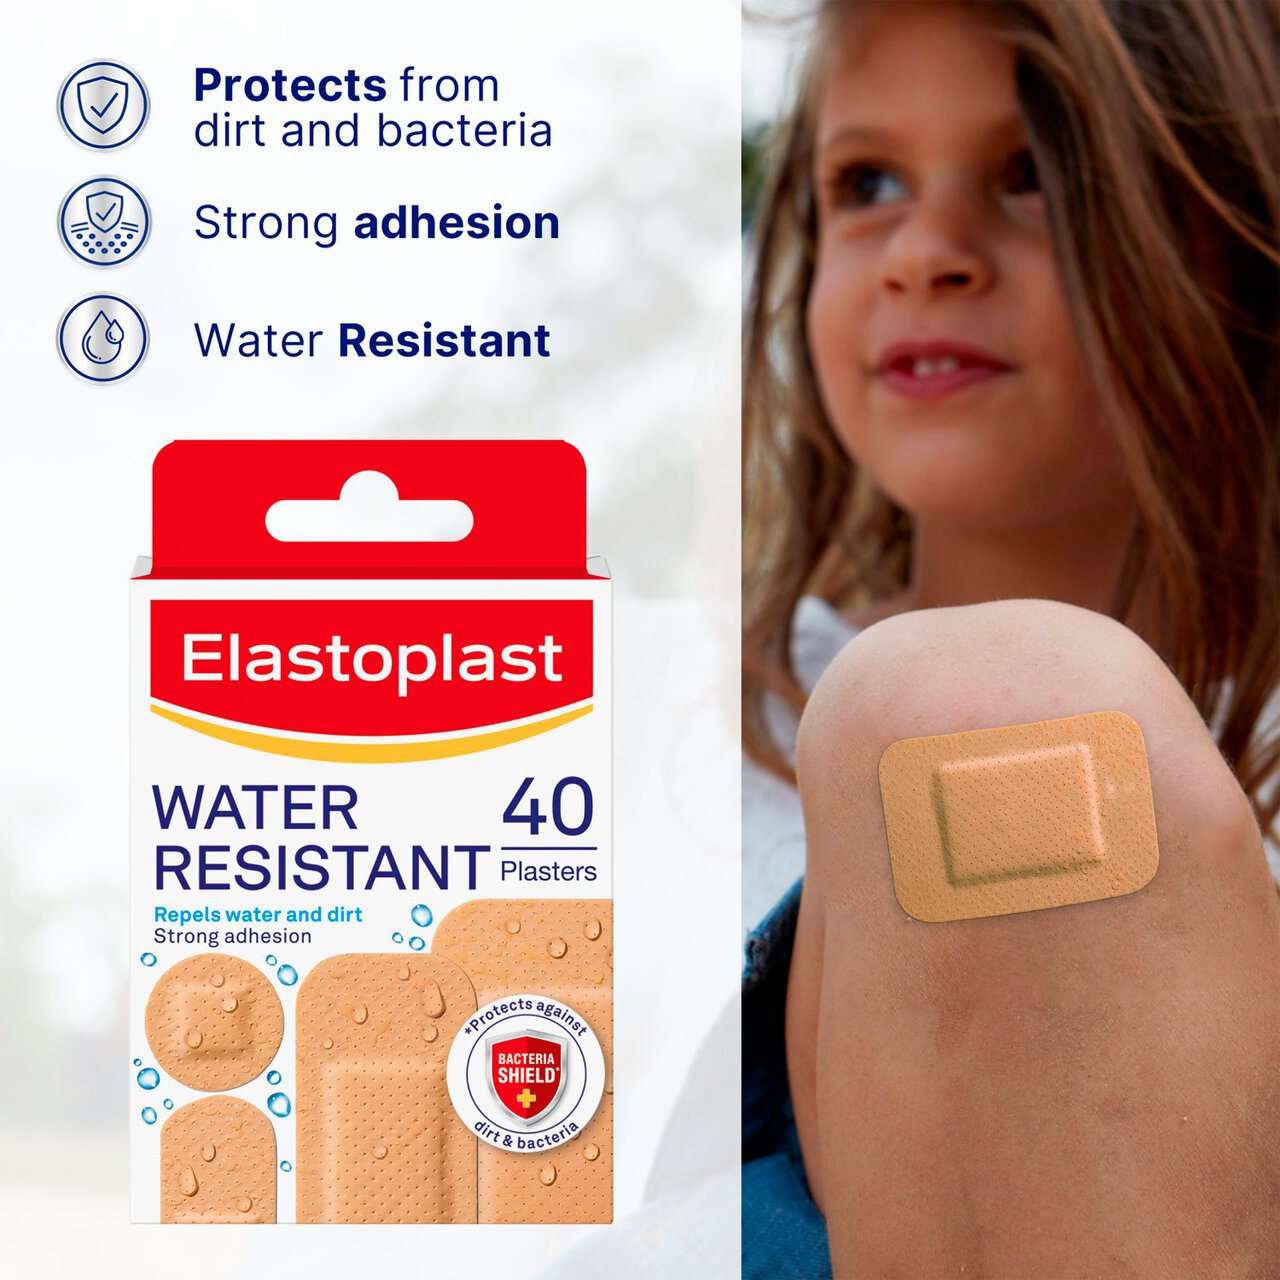 Elastoplast Water Resistant Plasters 40 per pack